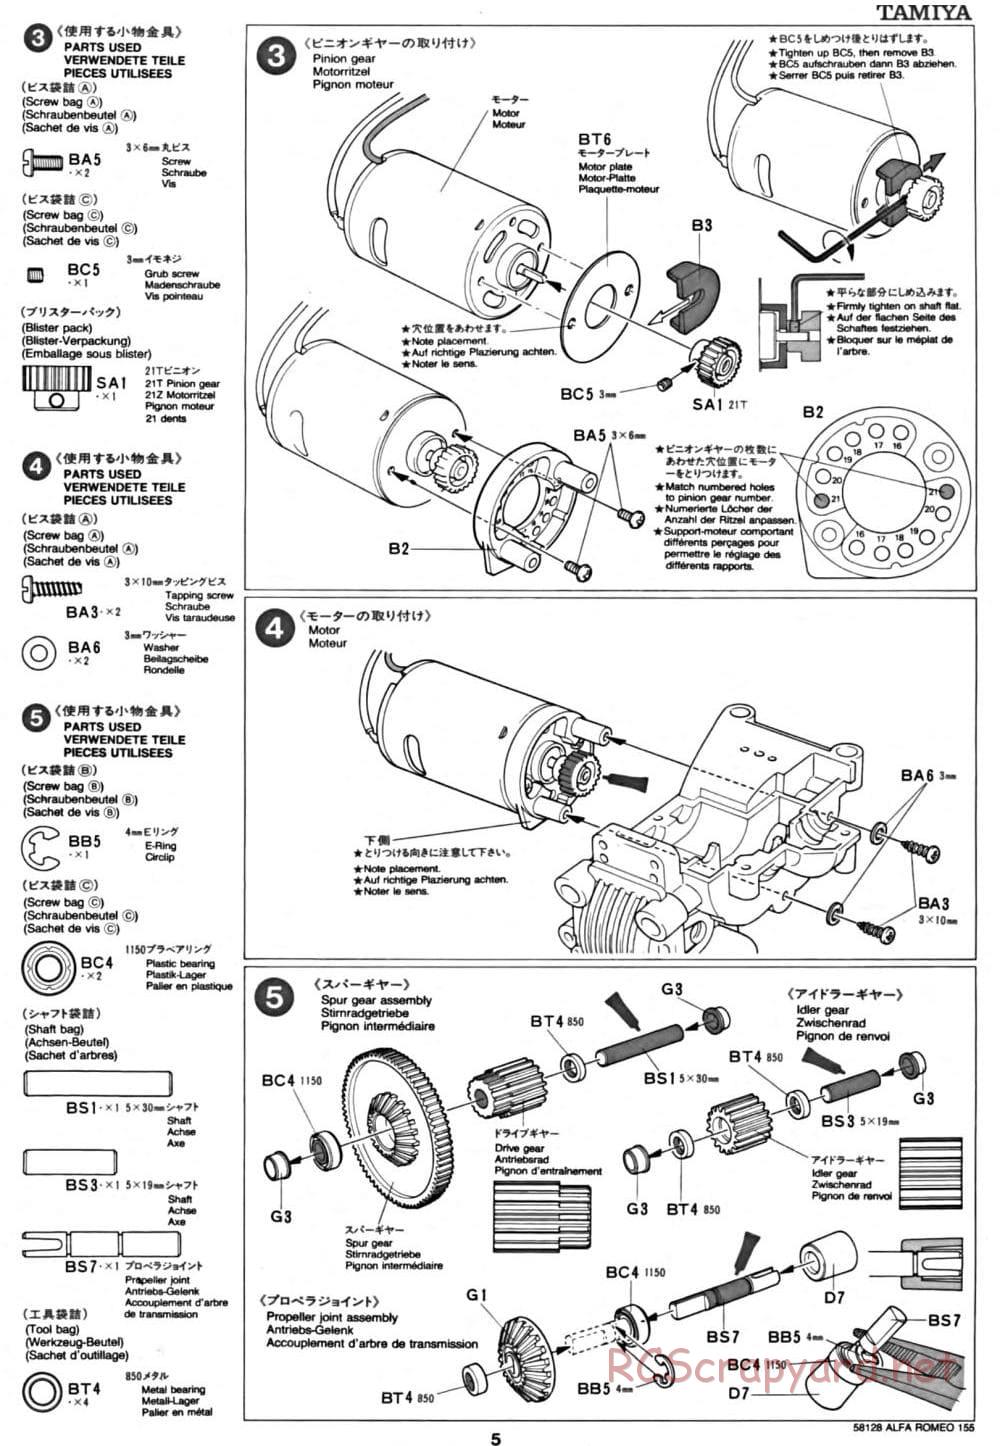 Tamiya - Alfa Romeo 155 V6 TI - TA-02 Chassis - Manual - Page 5